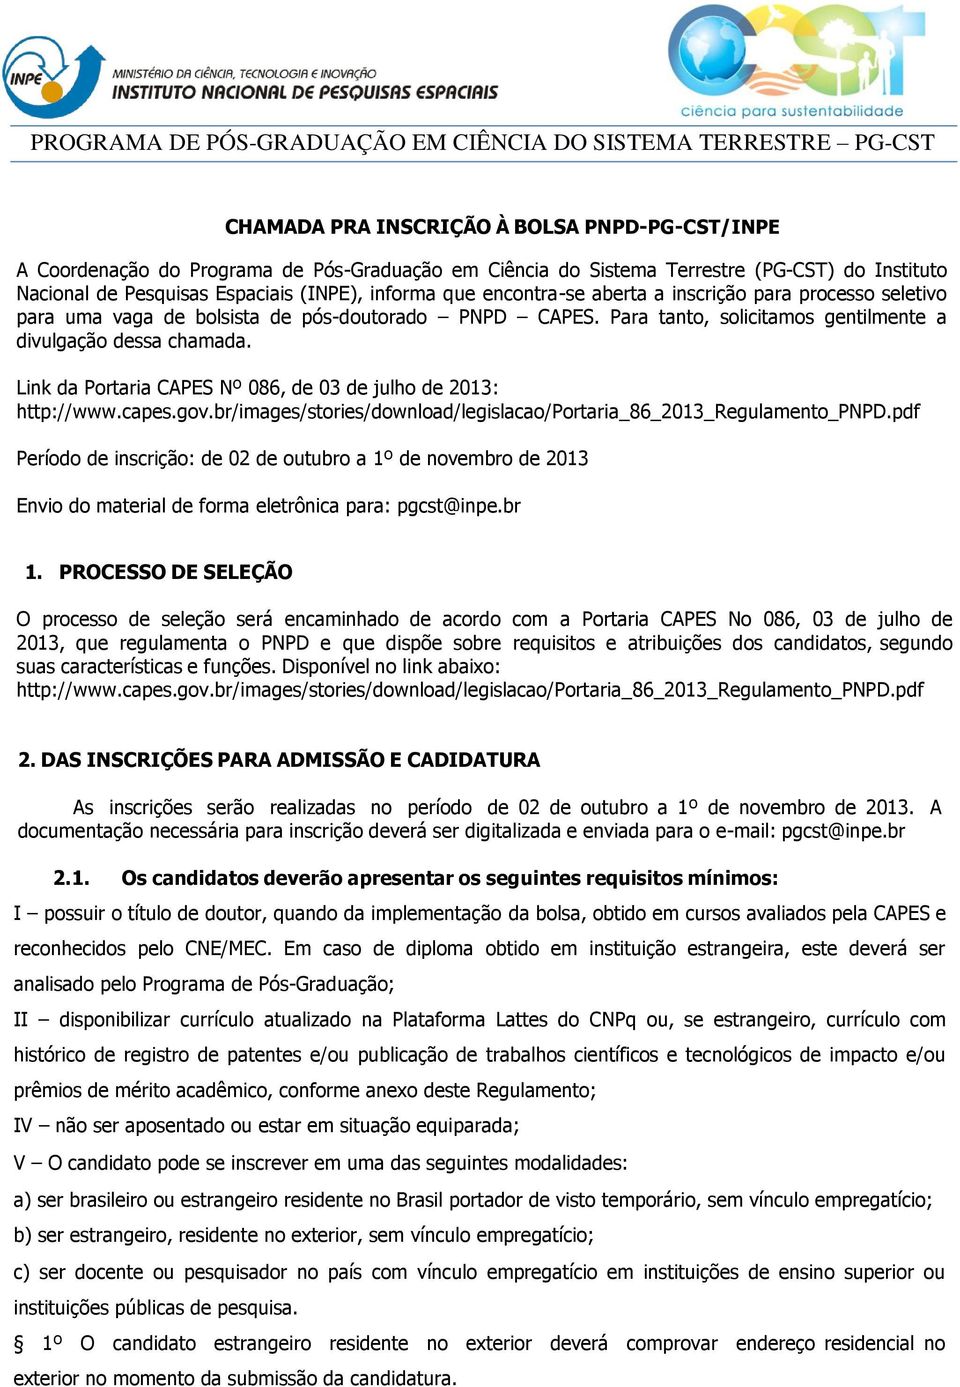 Link da Portaria CAPES Nº 086, de 03 de julho de 2013: http://www.capes.gov.br/images/stories/download/legislacao/portaria_86_2013_regulamento_pnpd.